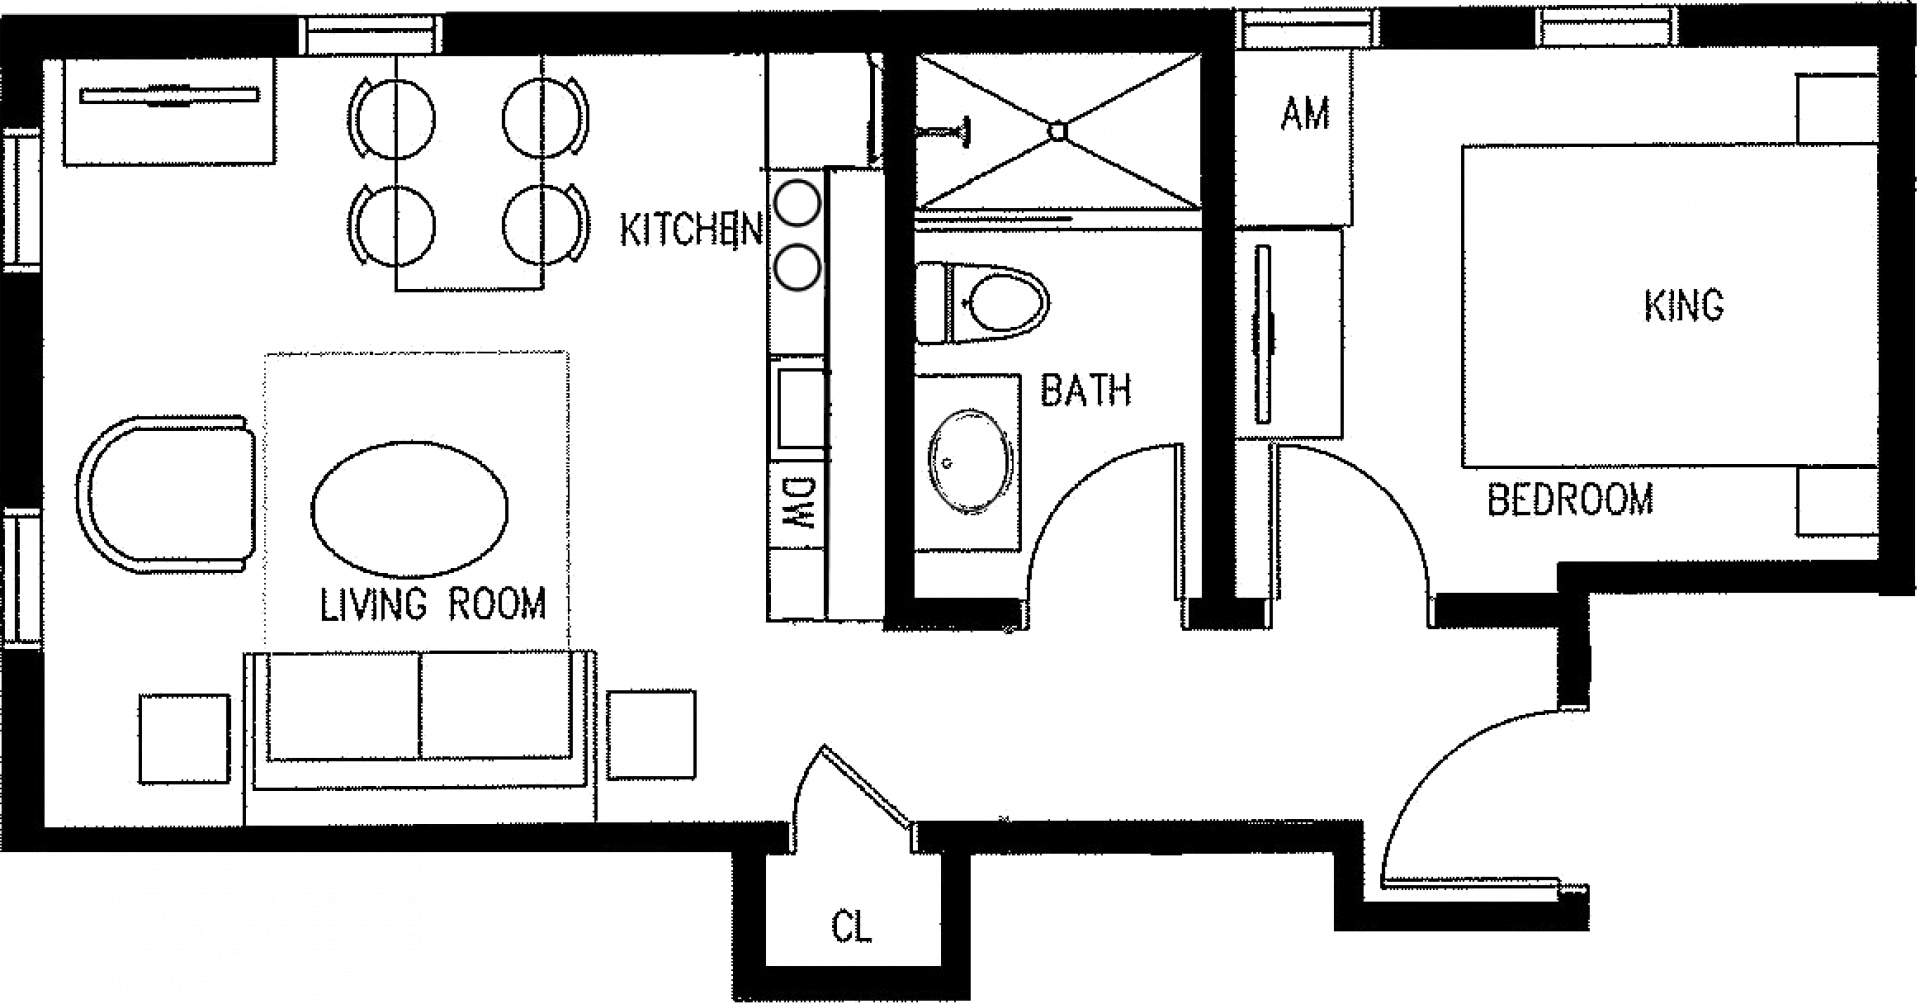 View Floorplan - Floor Plan Clipart (1920x1004), Png Download